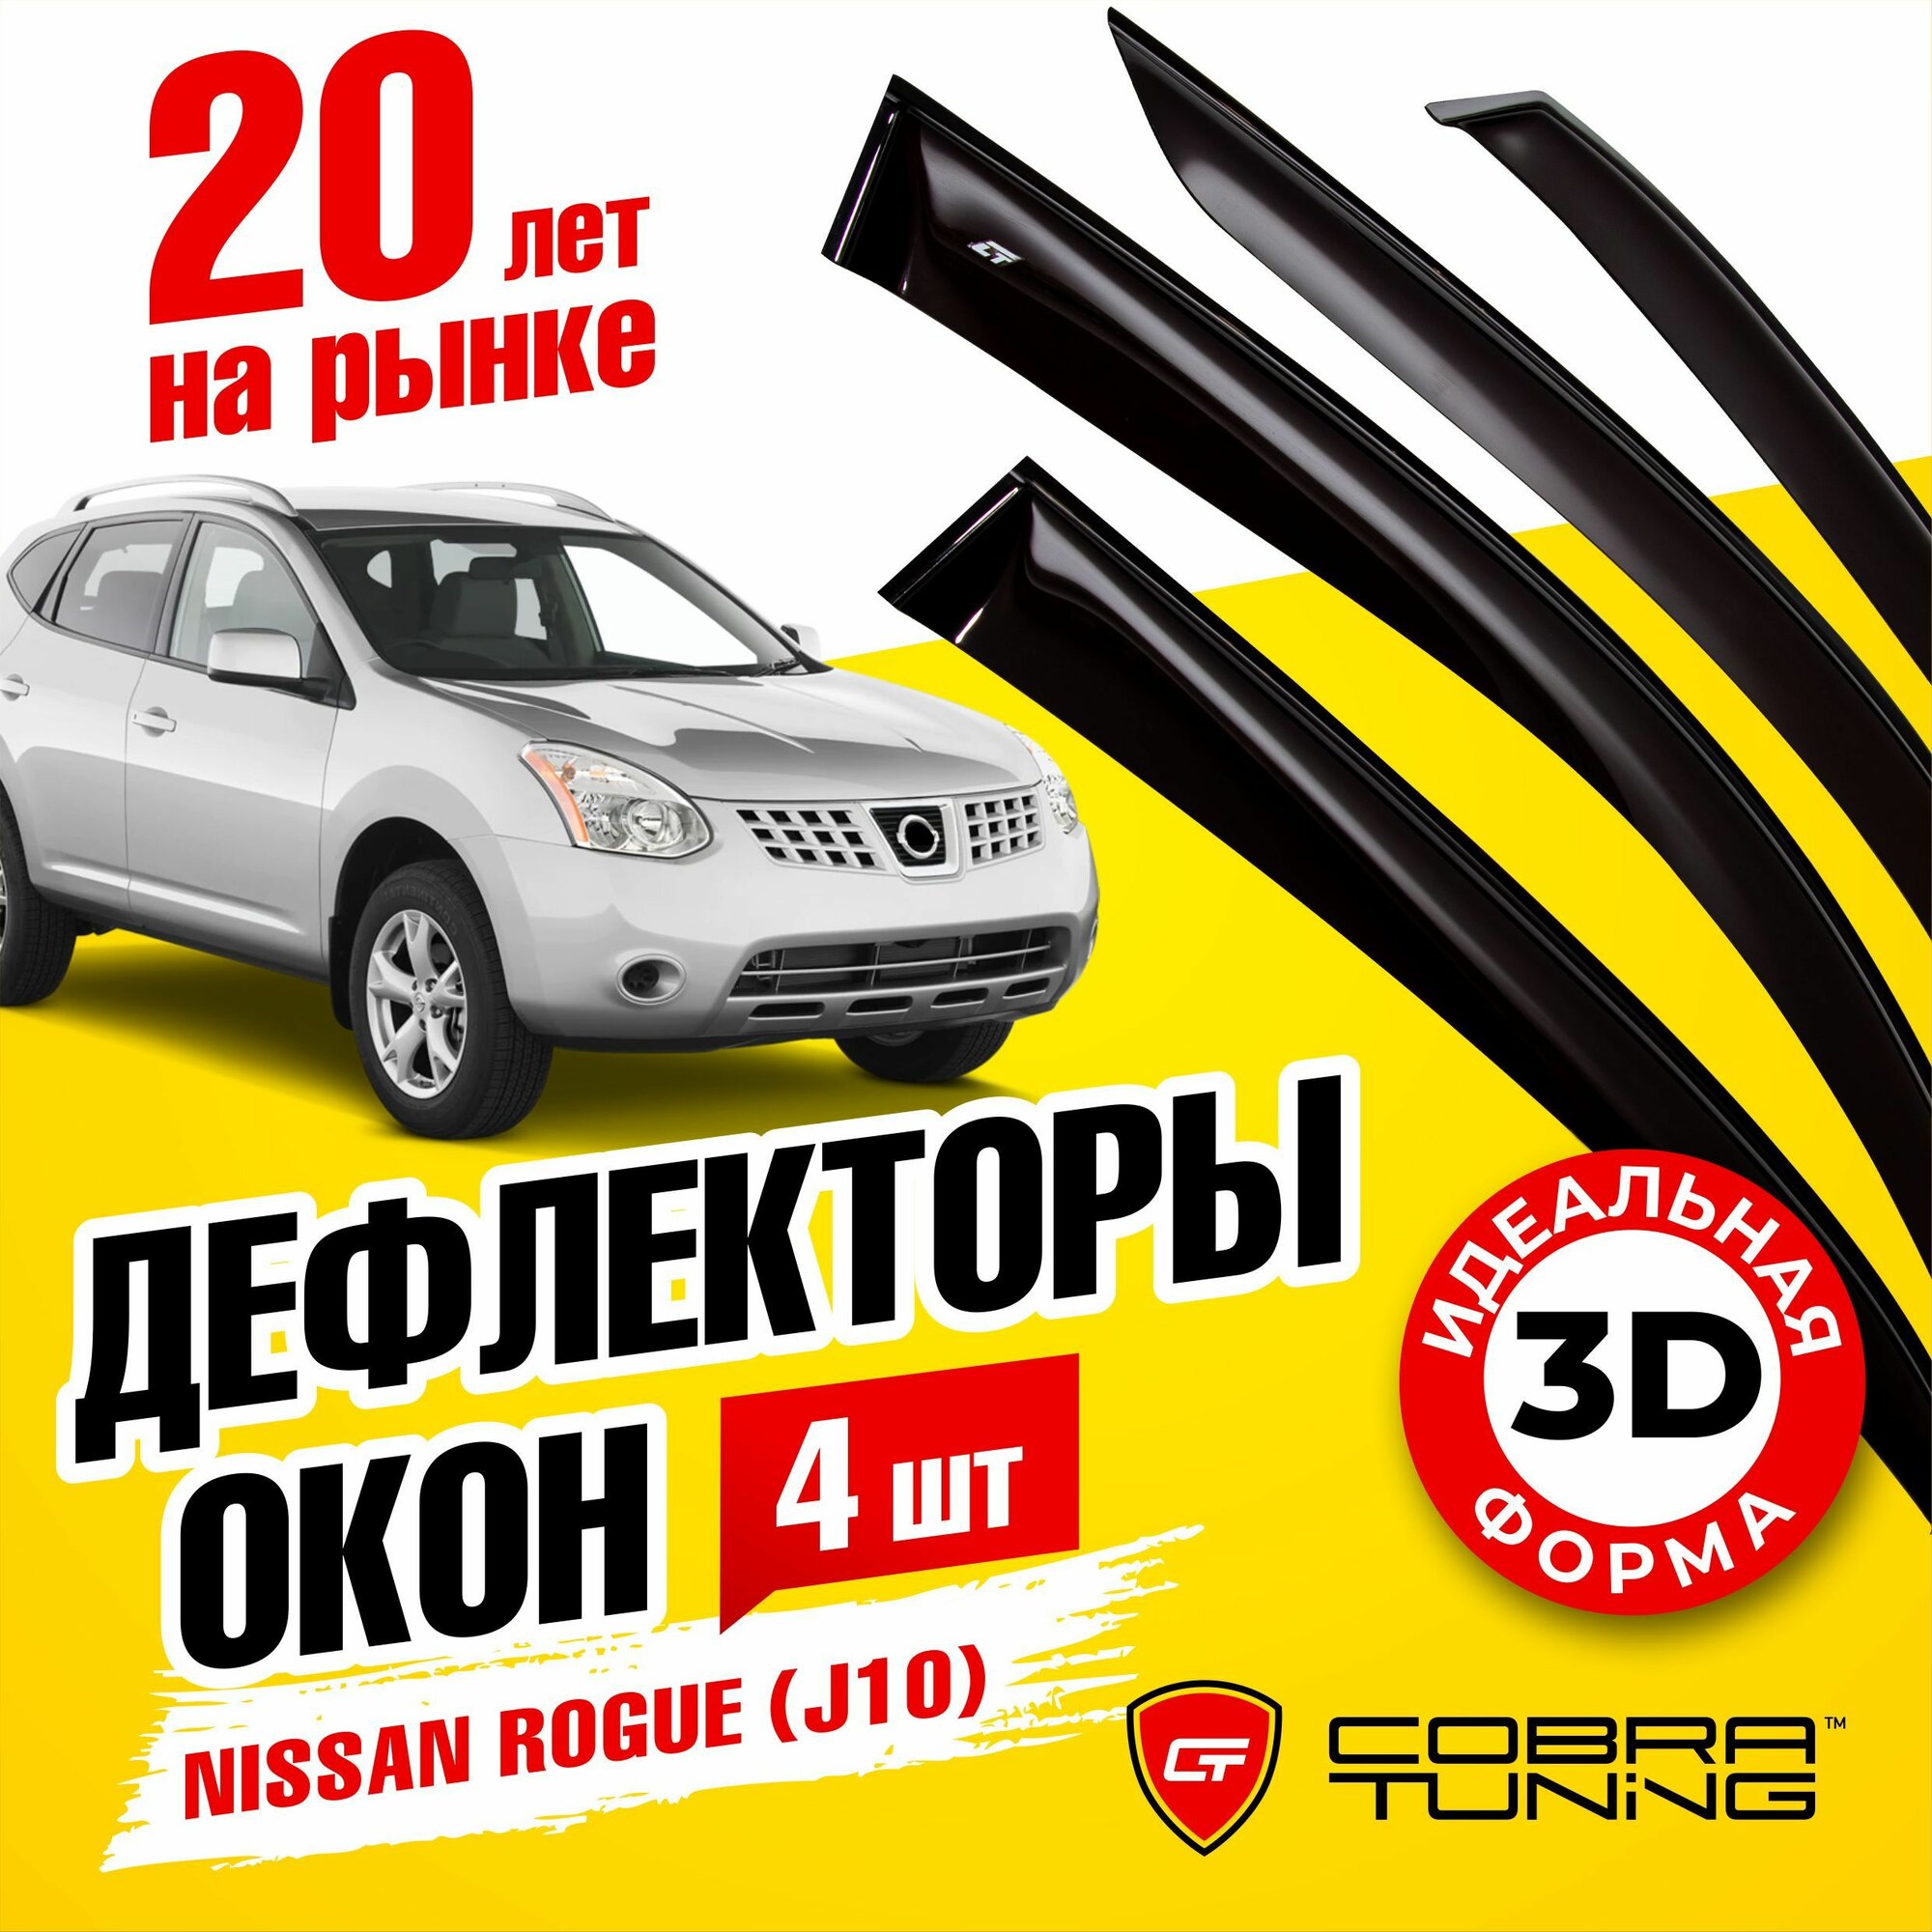 Дефлекторы боковых окон для Nissan Rogue (Ниссан Роуг) (J10) 2007-2014 ветровики на двери автомобиля Cobra Tuning